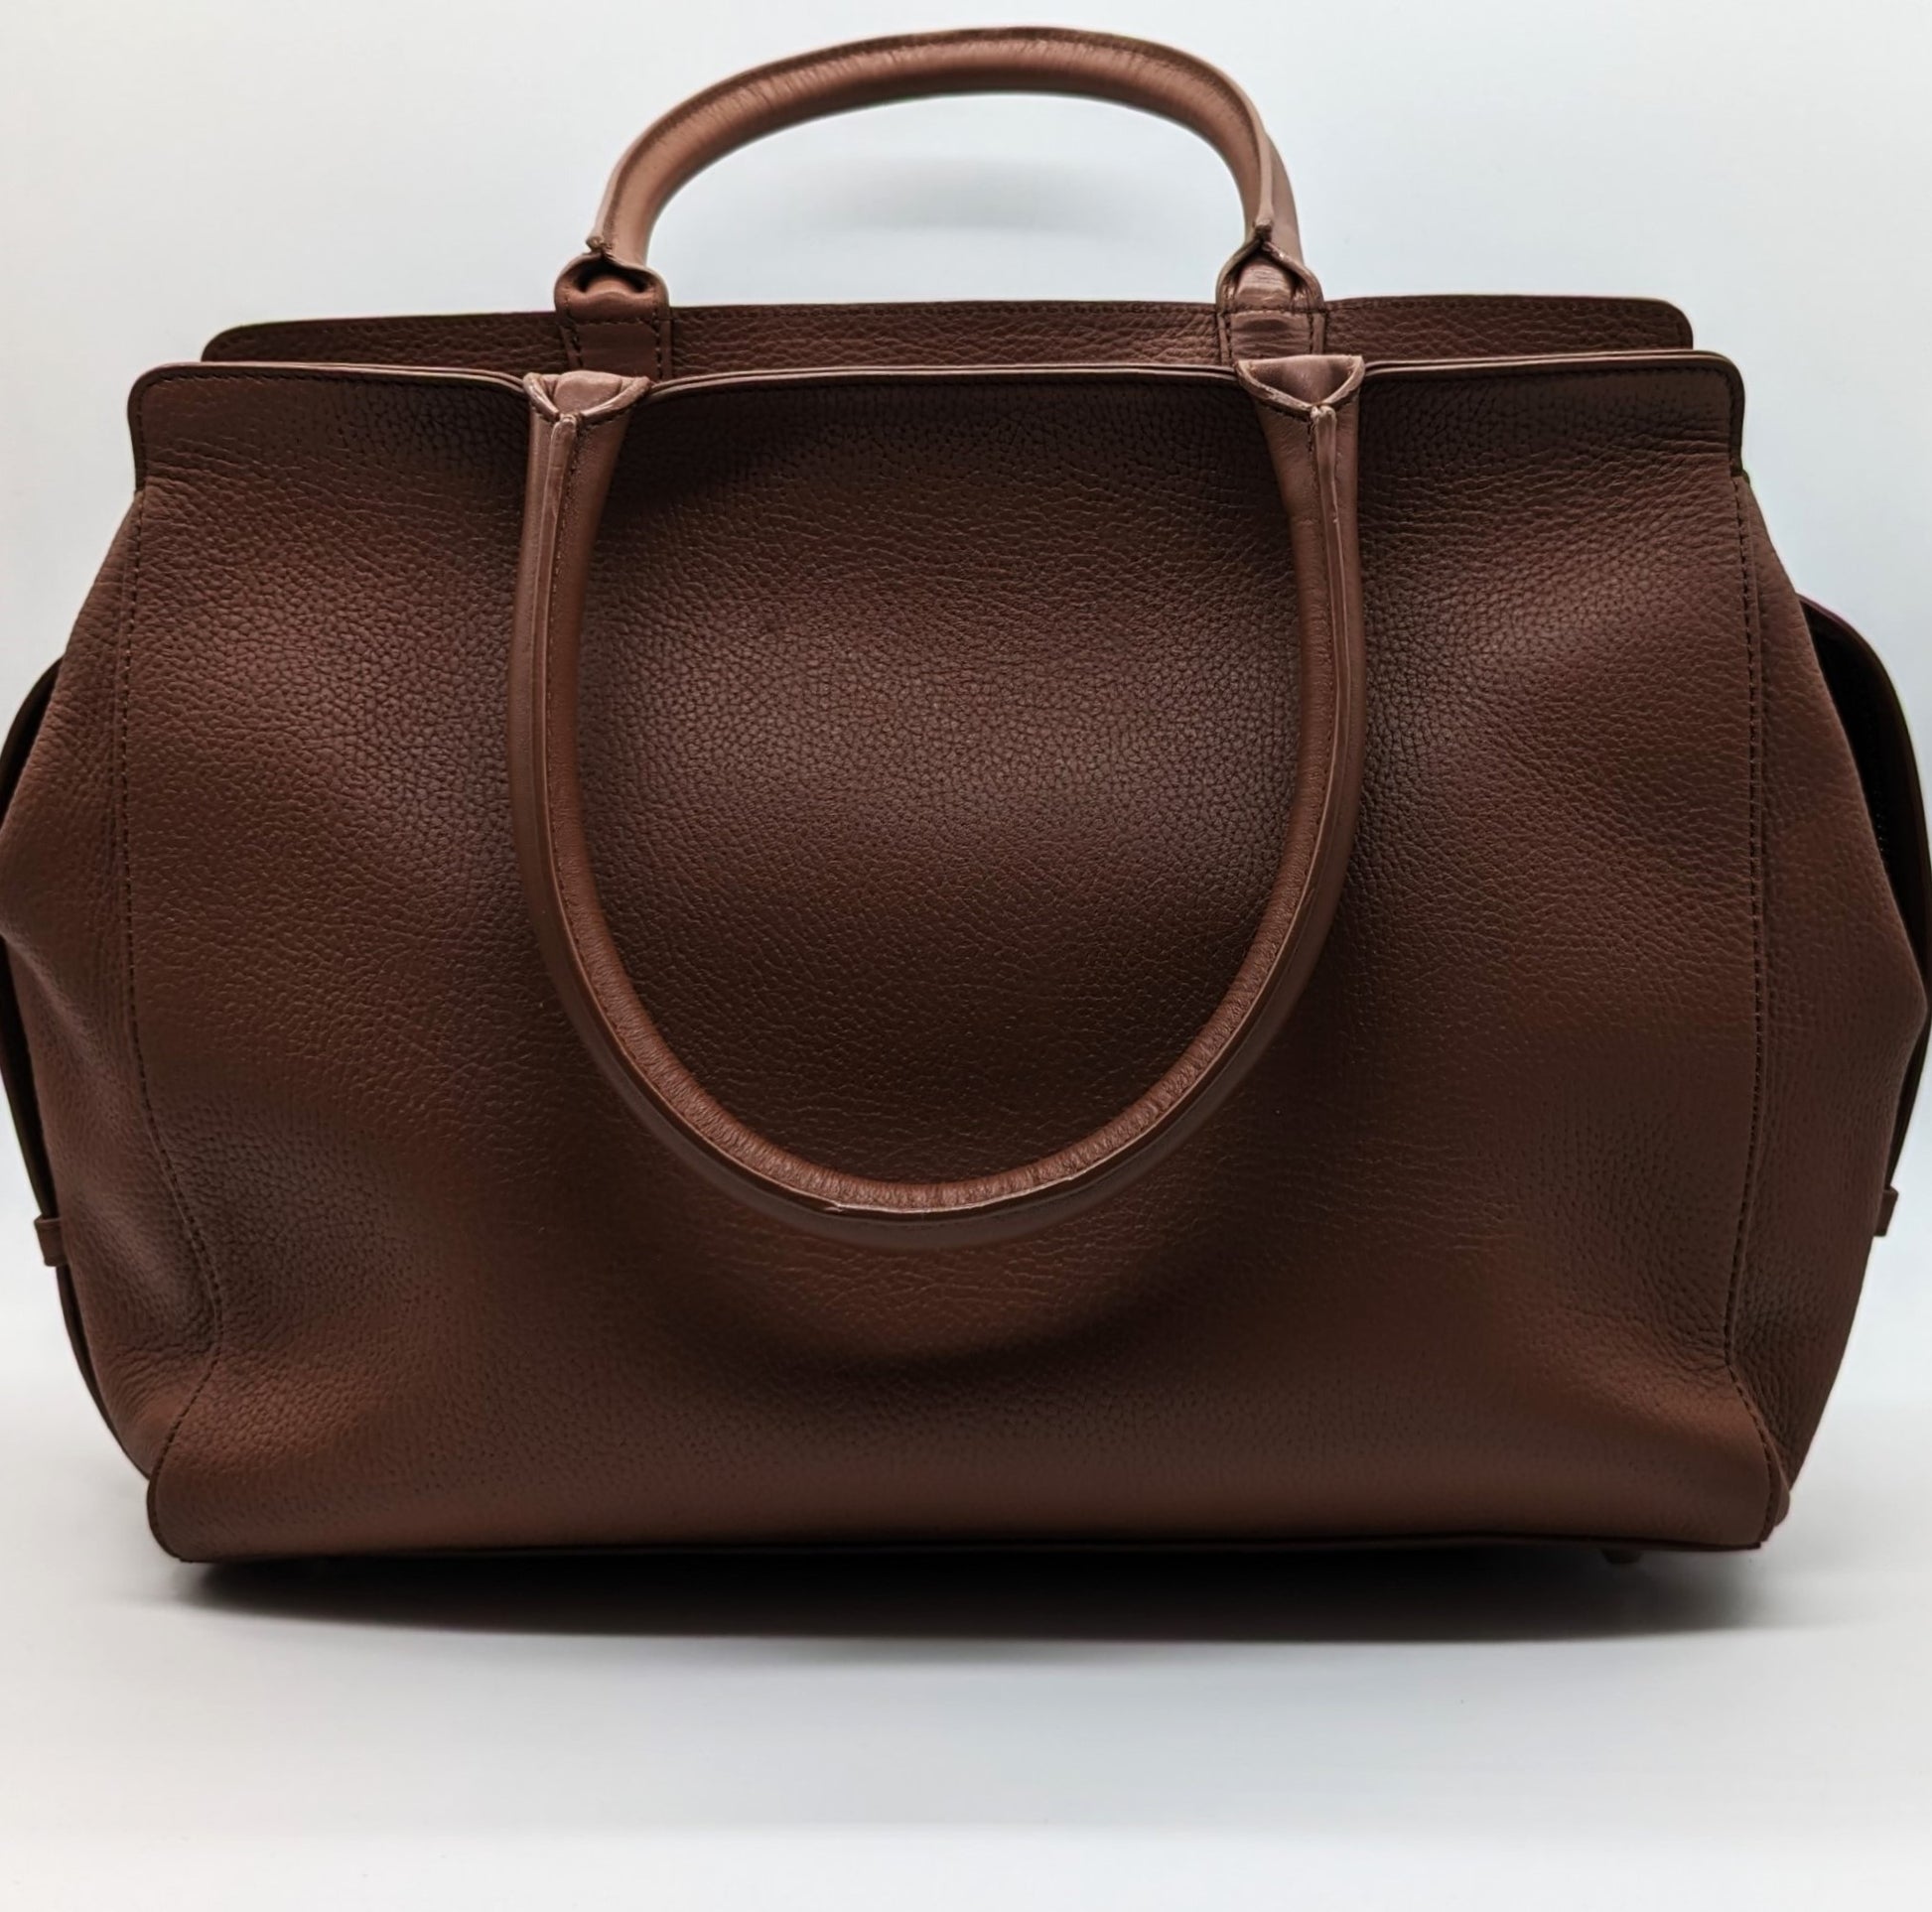 Modalu Berkeley leather small grab bag tan – Runway Accs